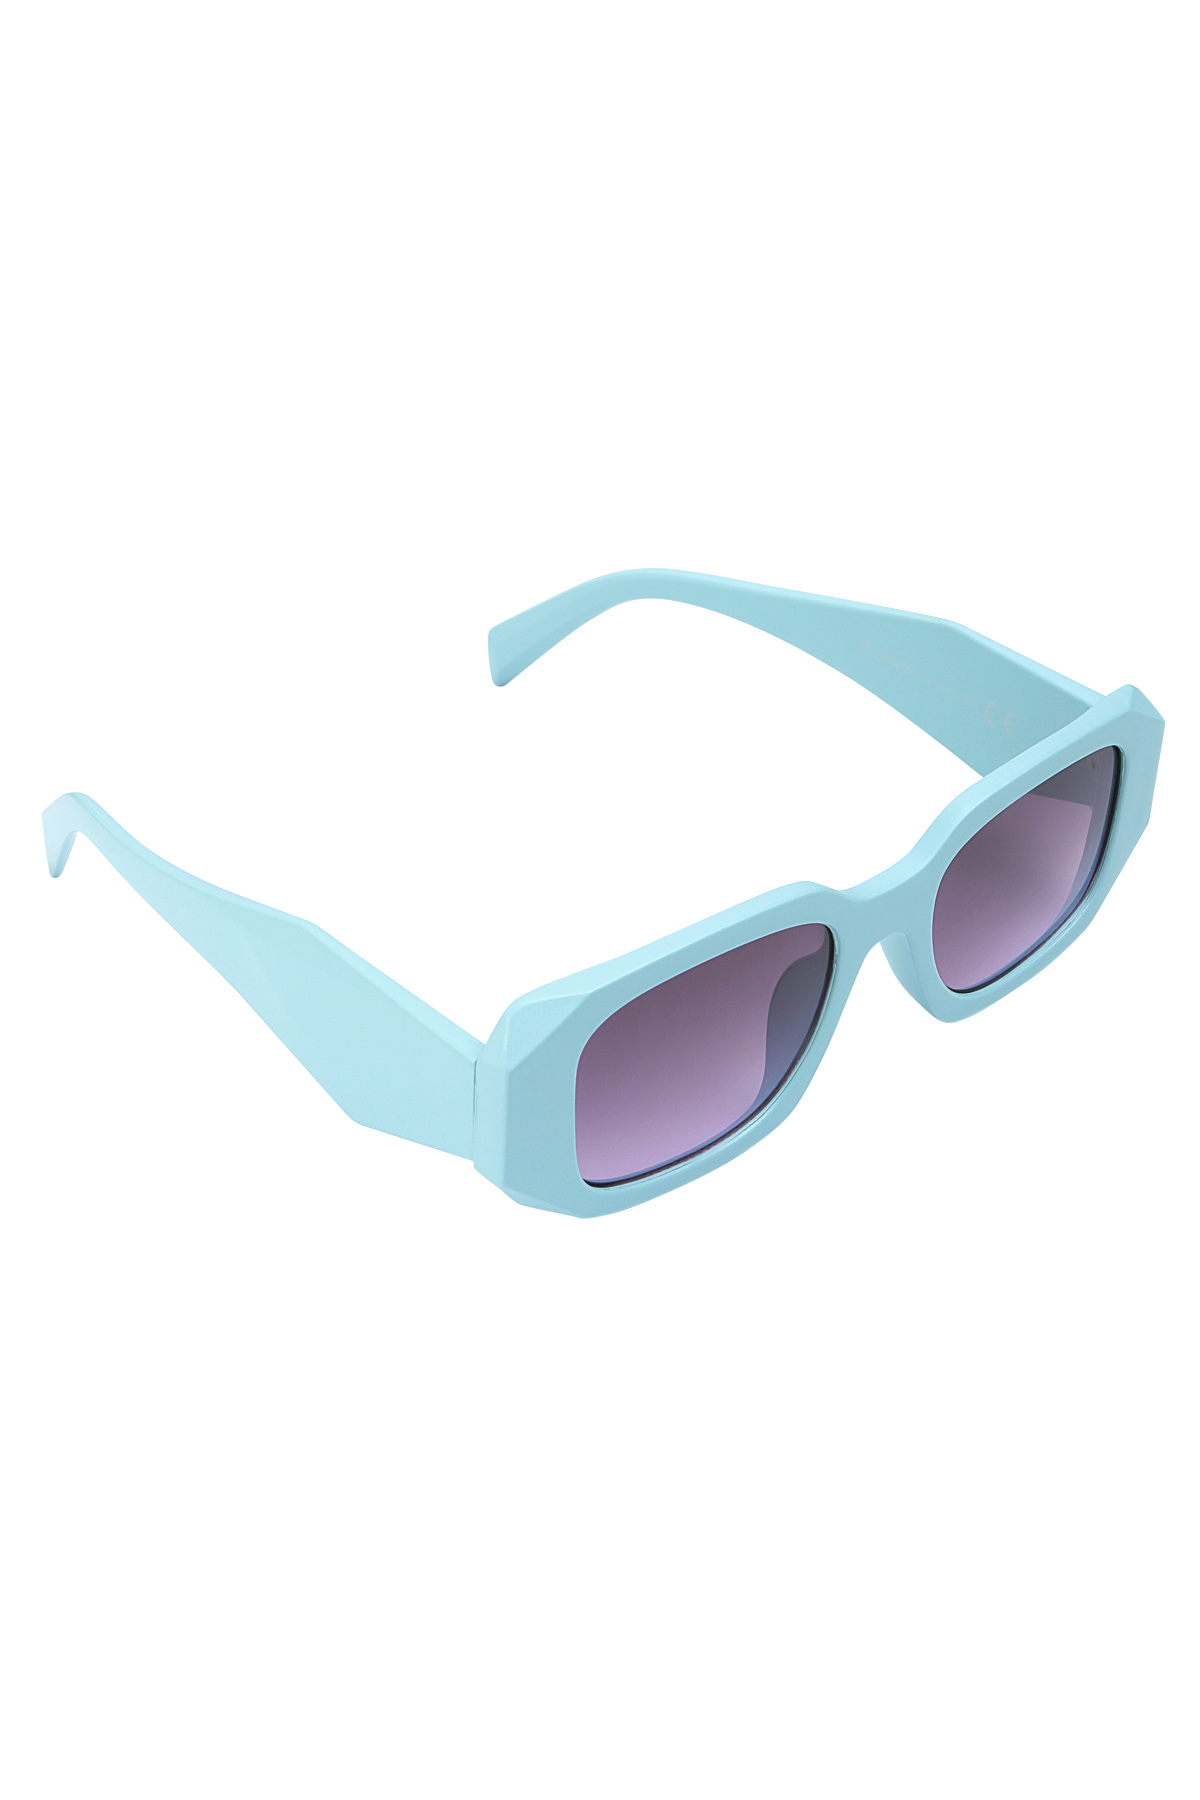 Sembrano occhiali da sole con gli angoli: blu